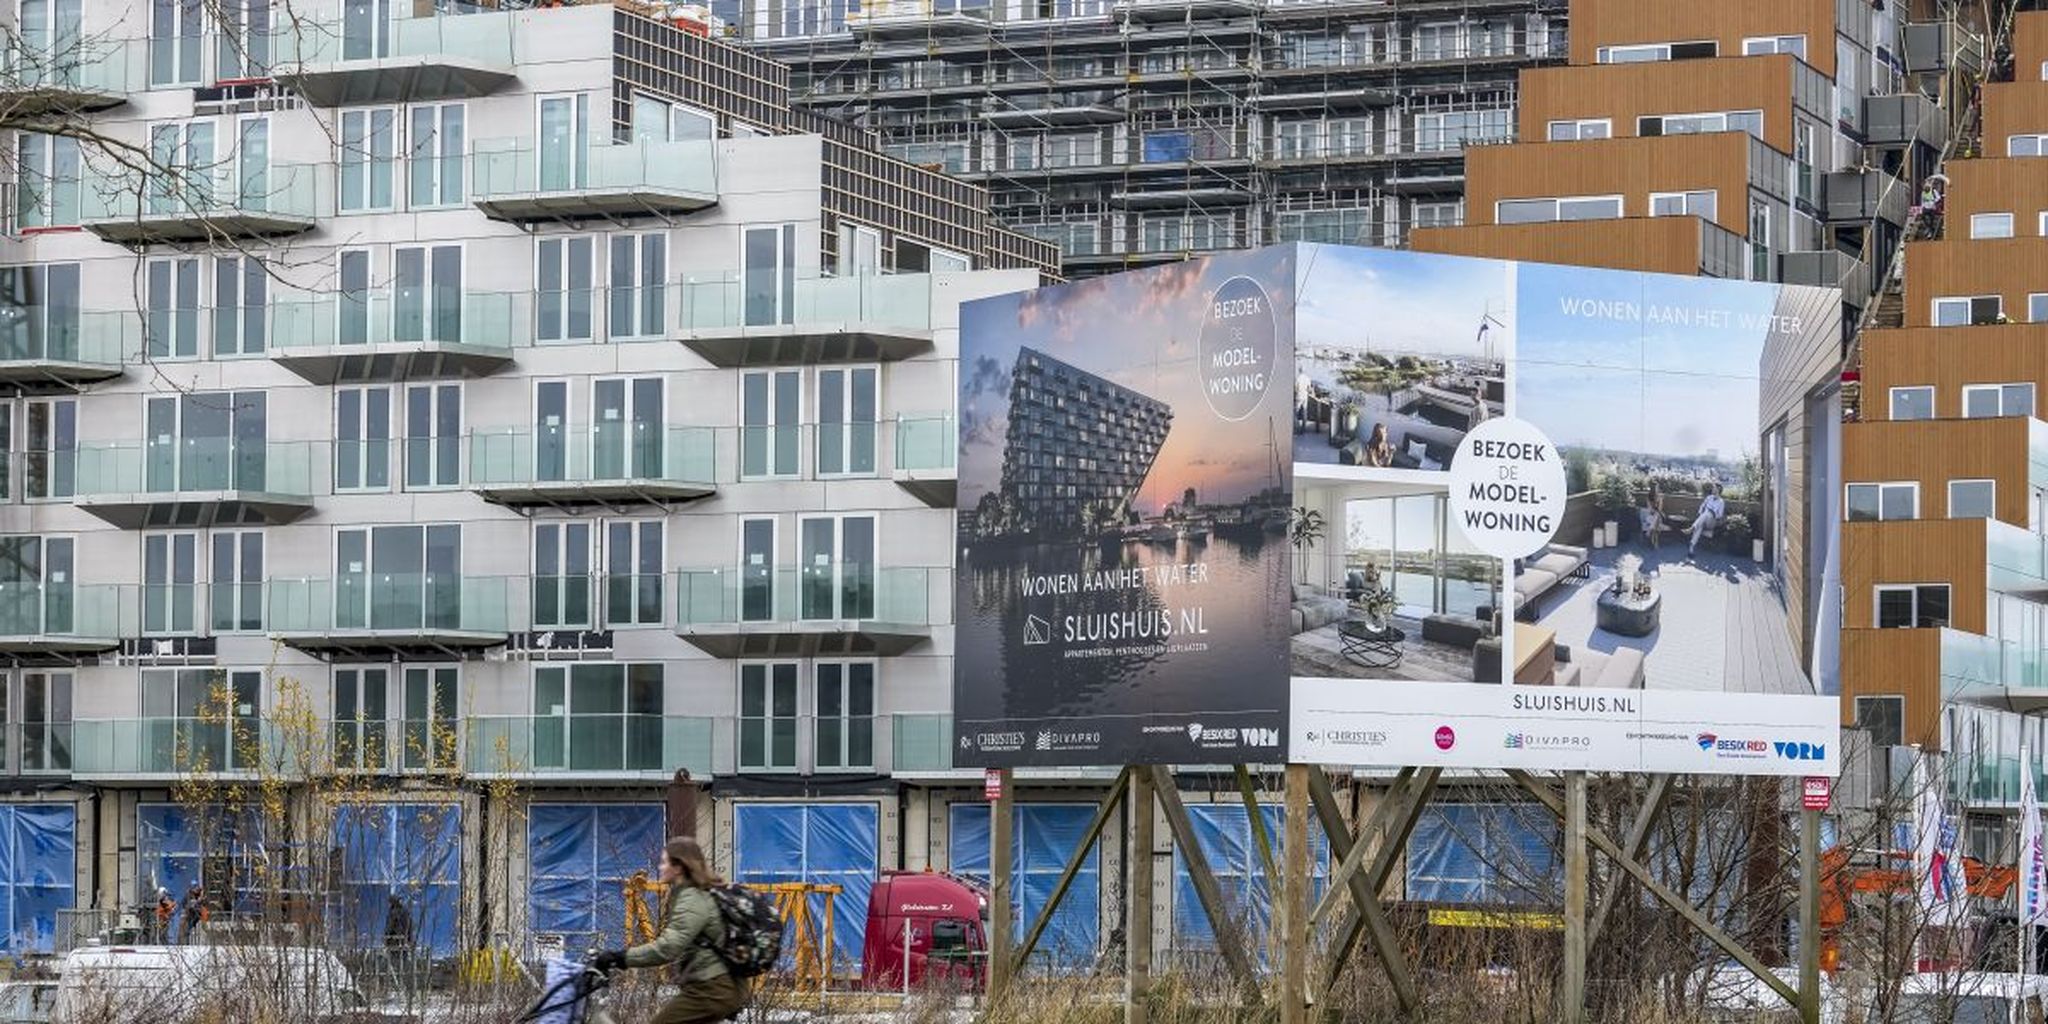 Verkoop Nederlandse nieuwbouwwoningen halveert opnieuw